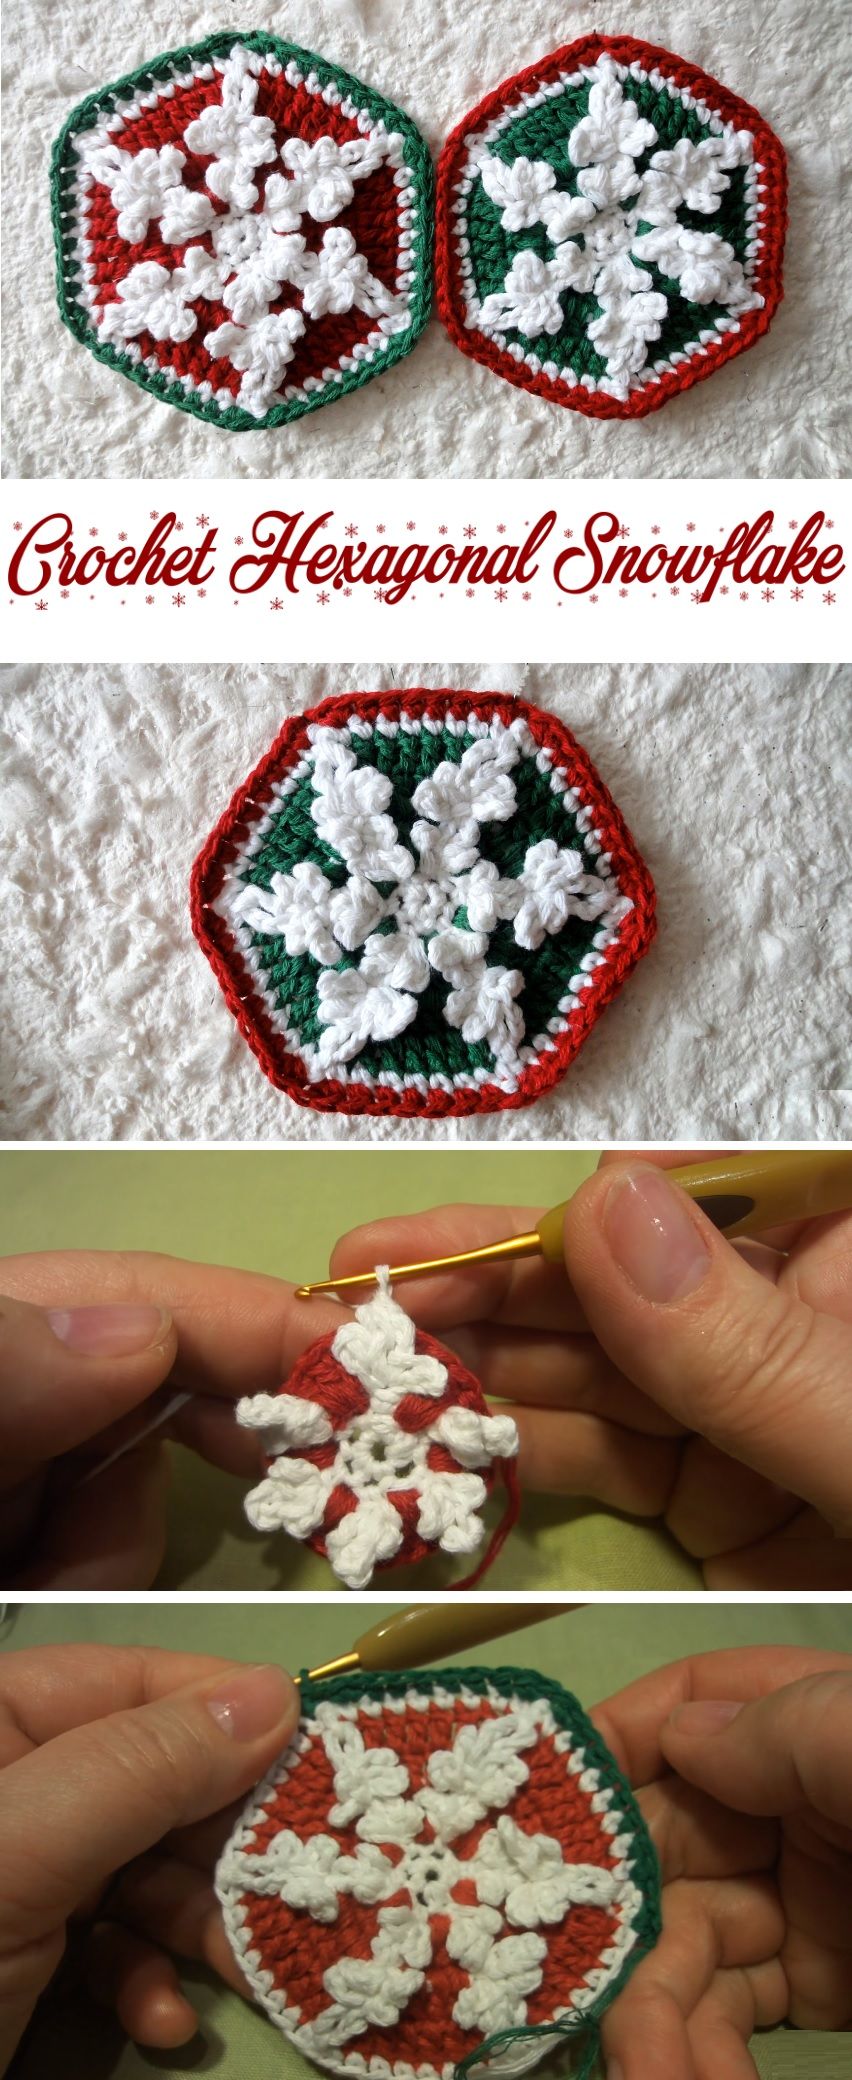 Crochet-Hexagonal-Snowflake.jpg